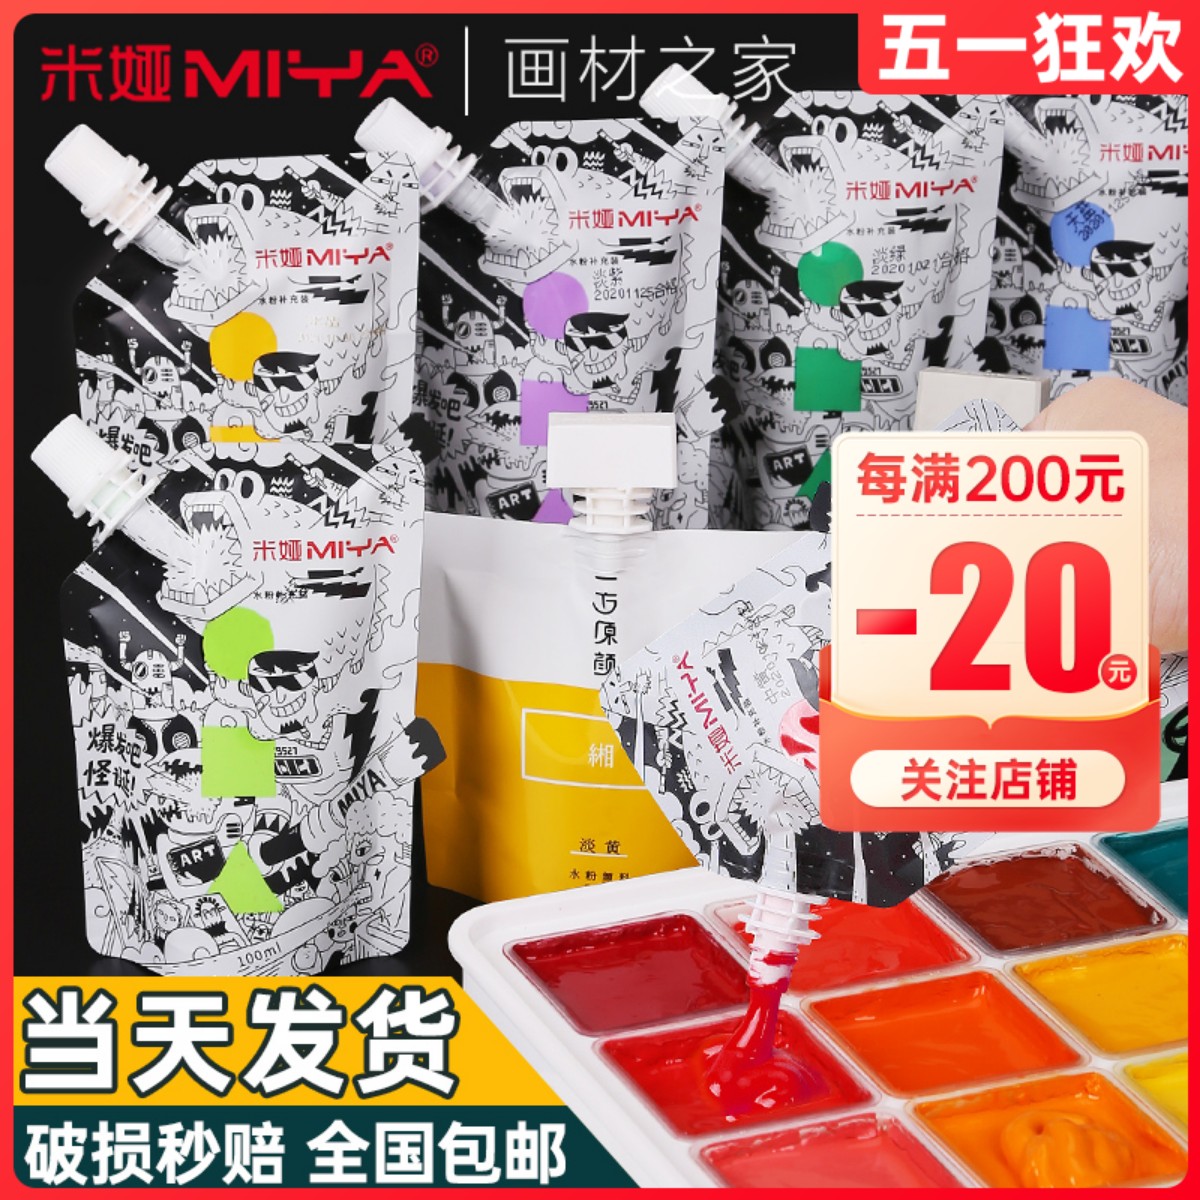 米娅水粉颜料补充装果冻袋装米亚补充包自选杯装单个填充钛白白色